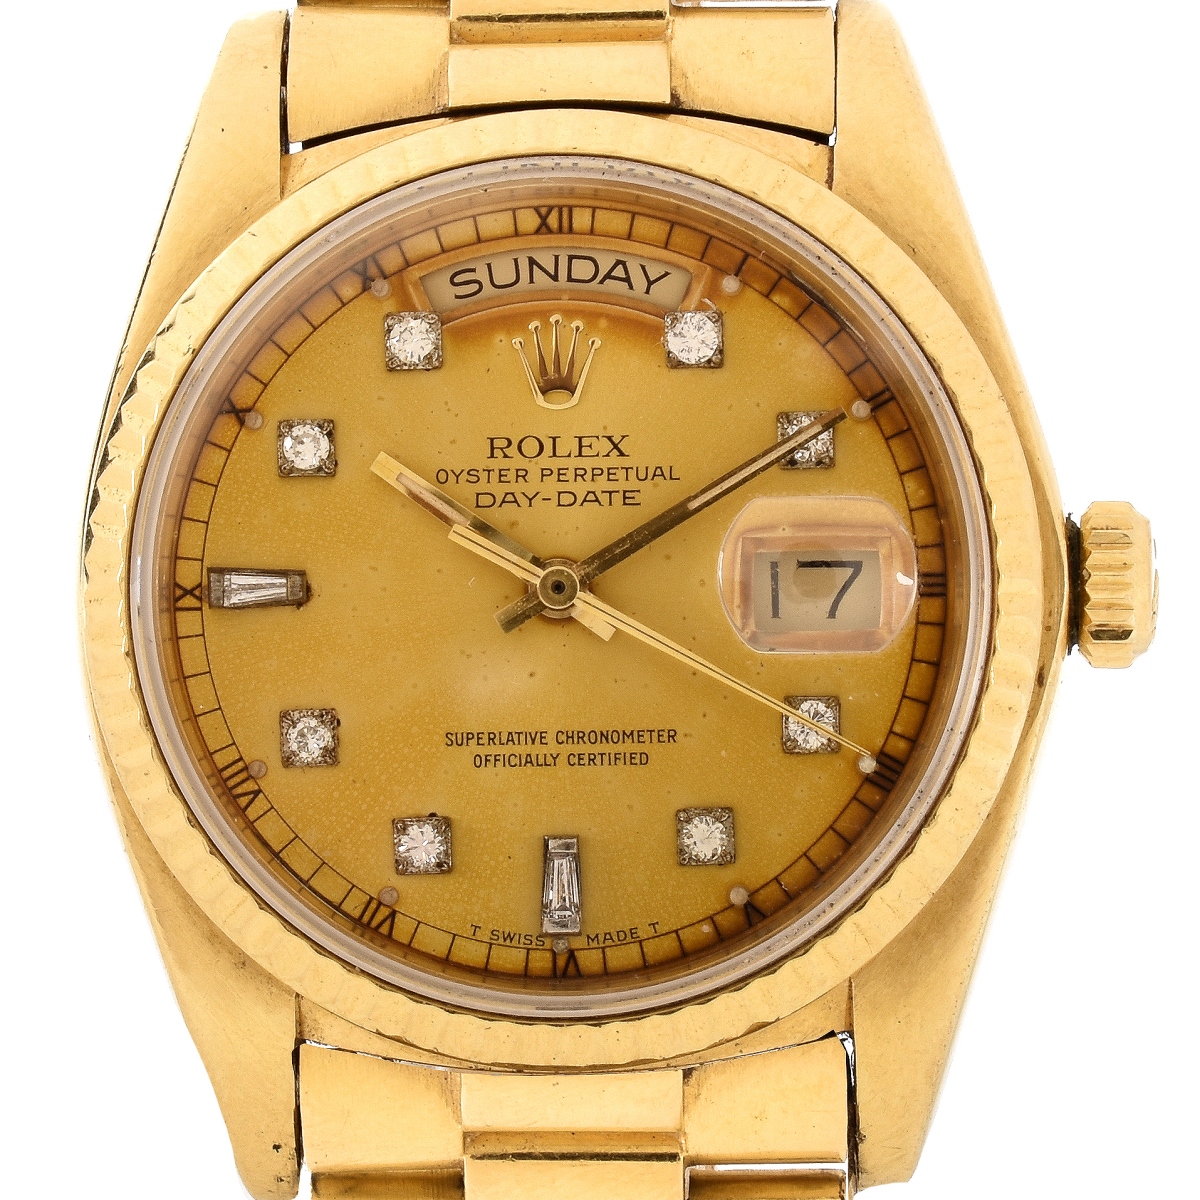 Man's Rolex 18K Watch